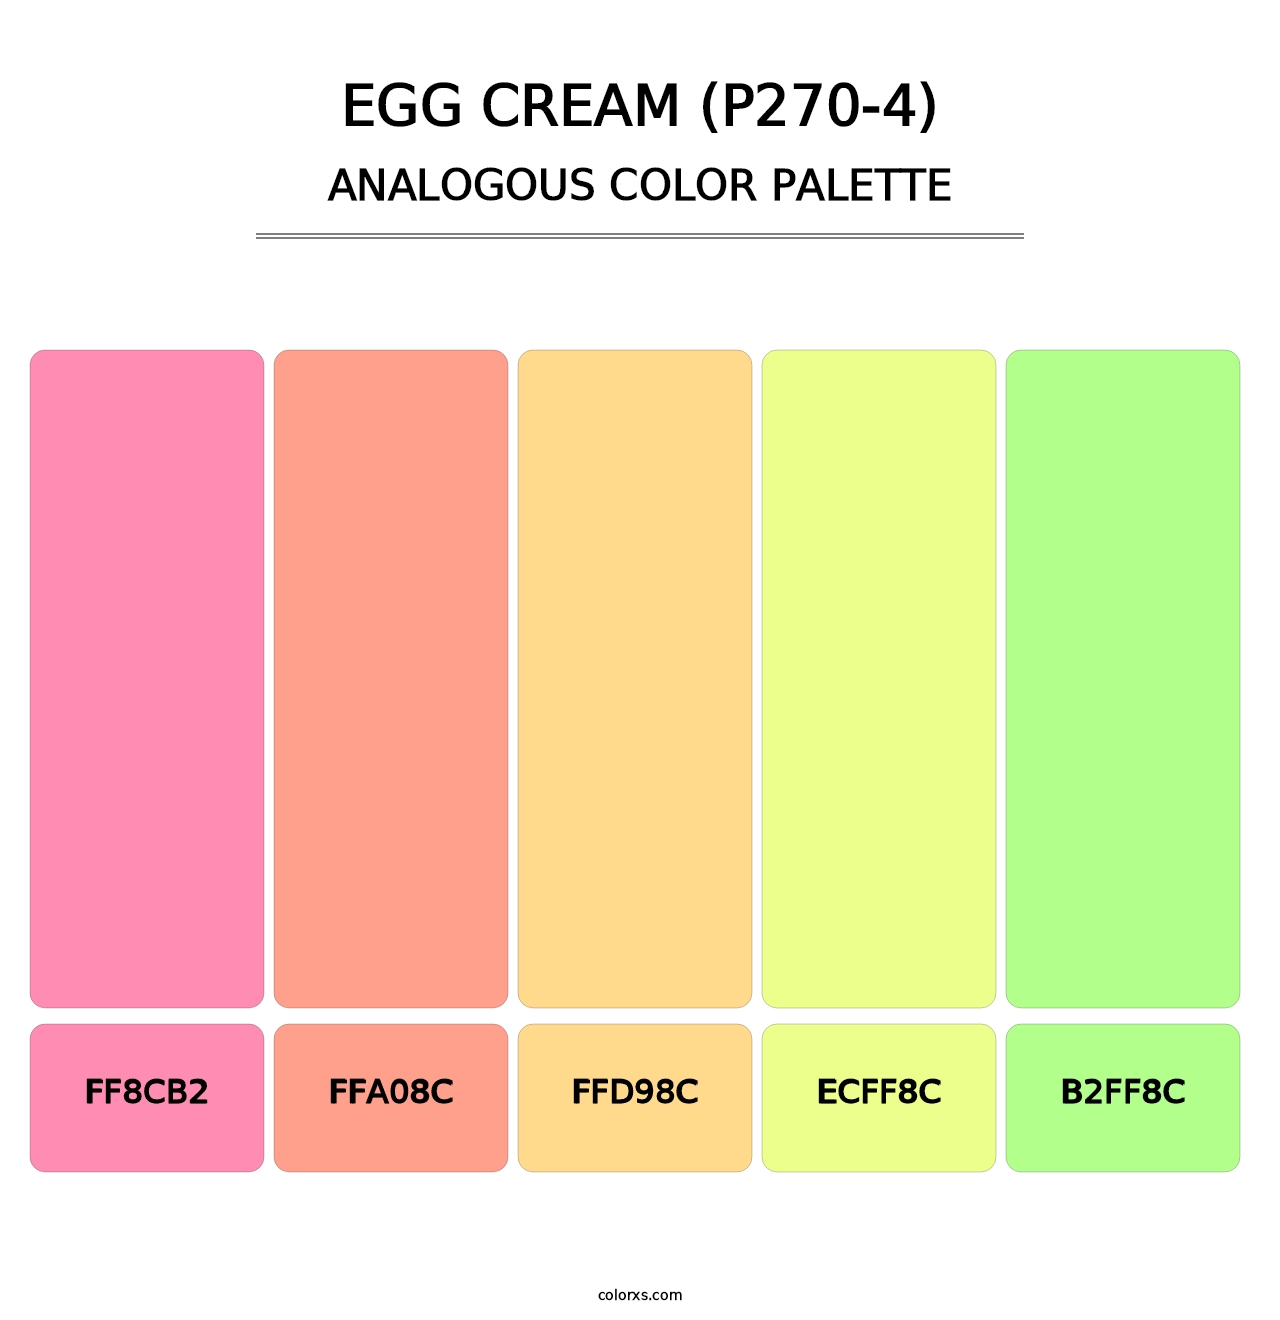 Egg Cream (P270-4) - Analogous Color Palette